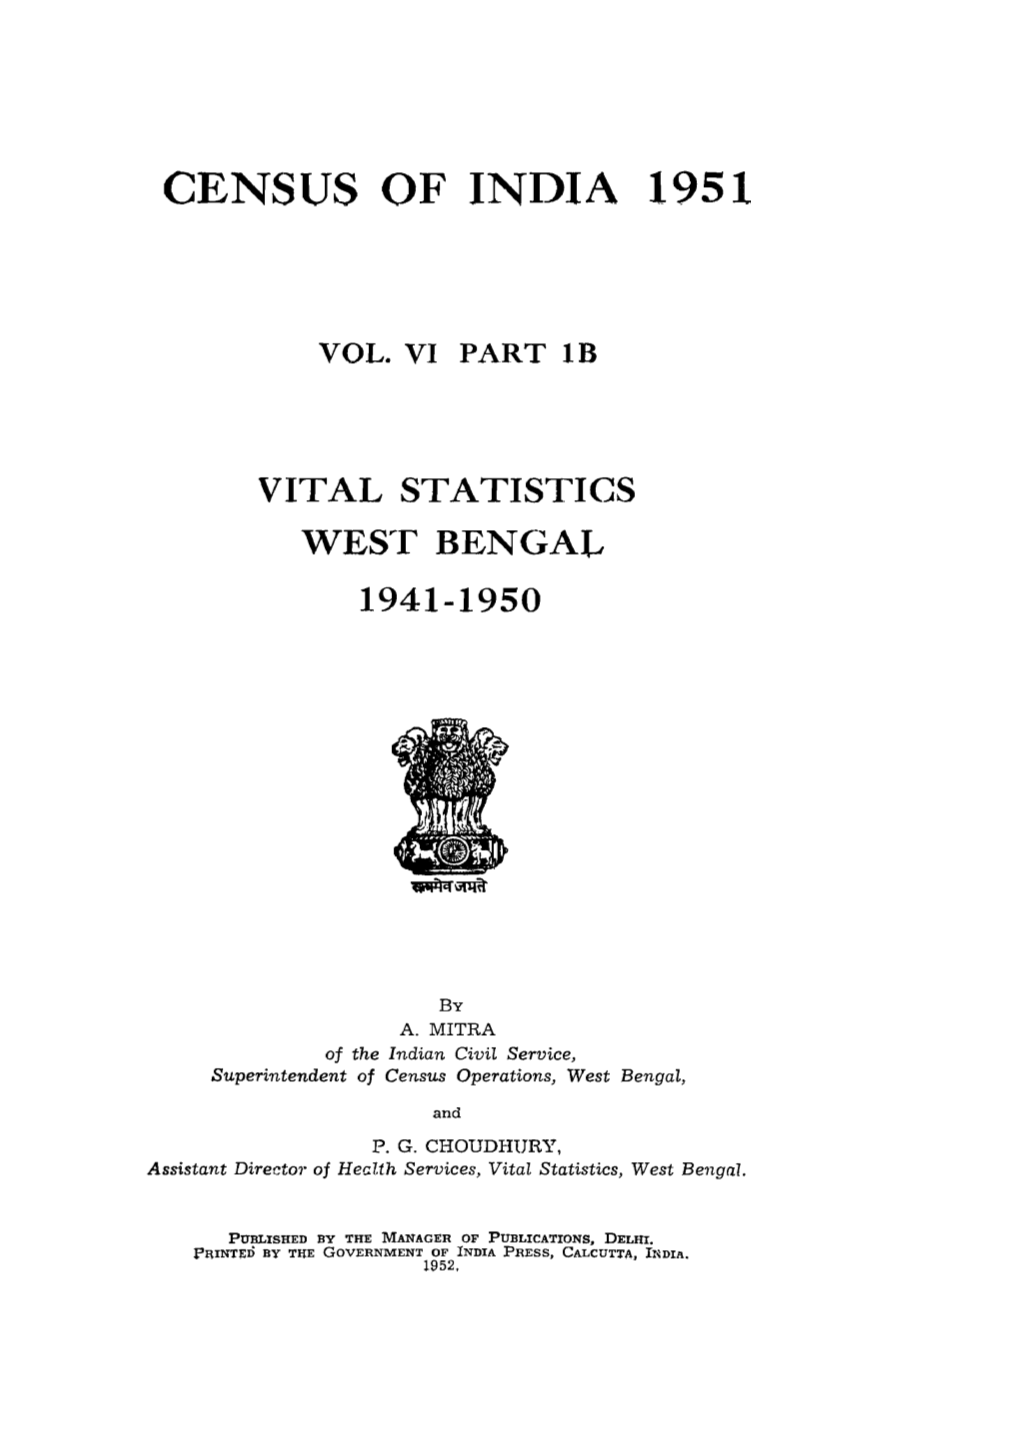 Vital Statistics West Bengal, Part IB, Vol-VI